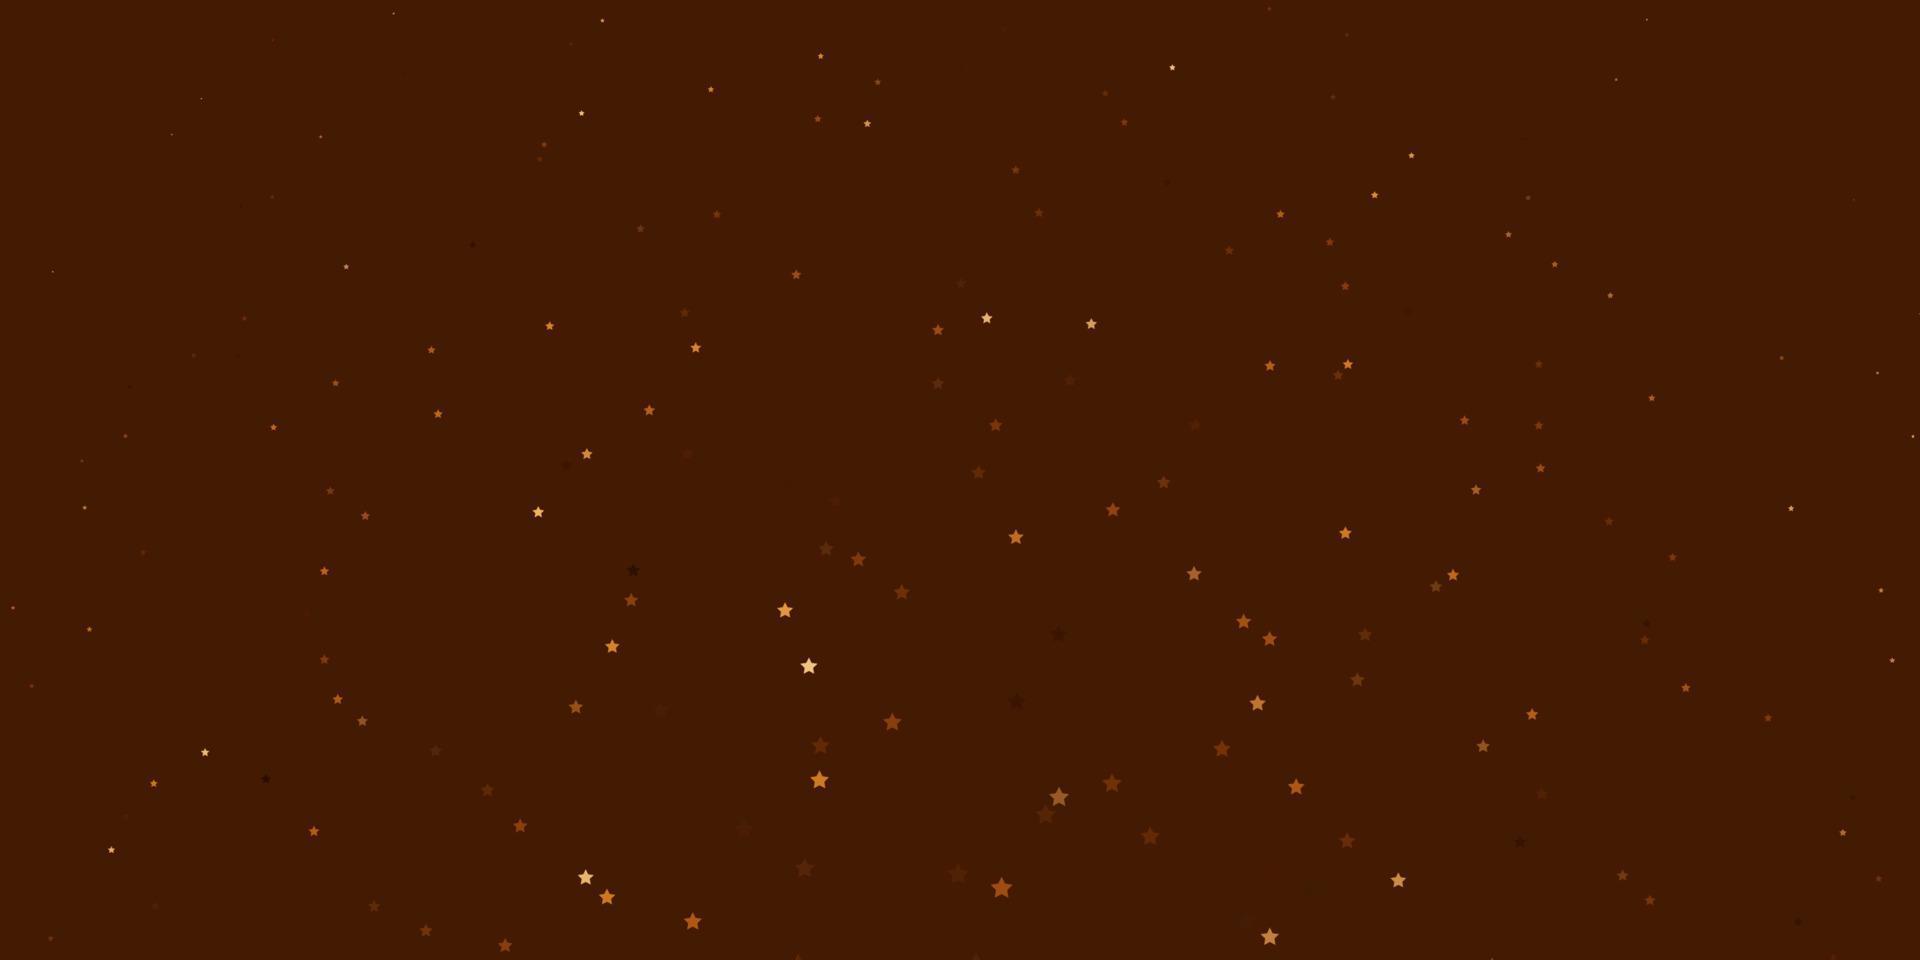 fond de vecteur orange foncé avec des étoiles colorées.